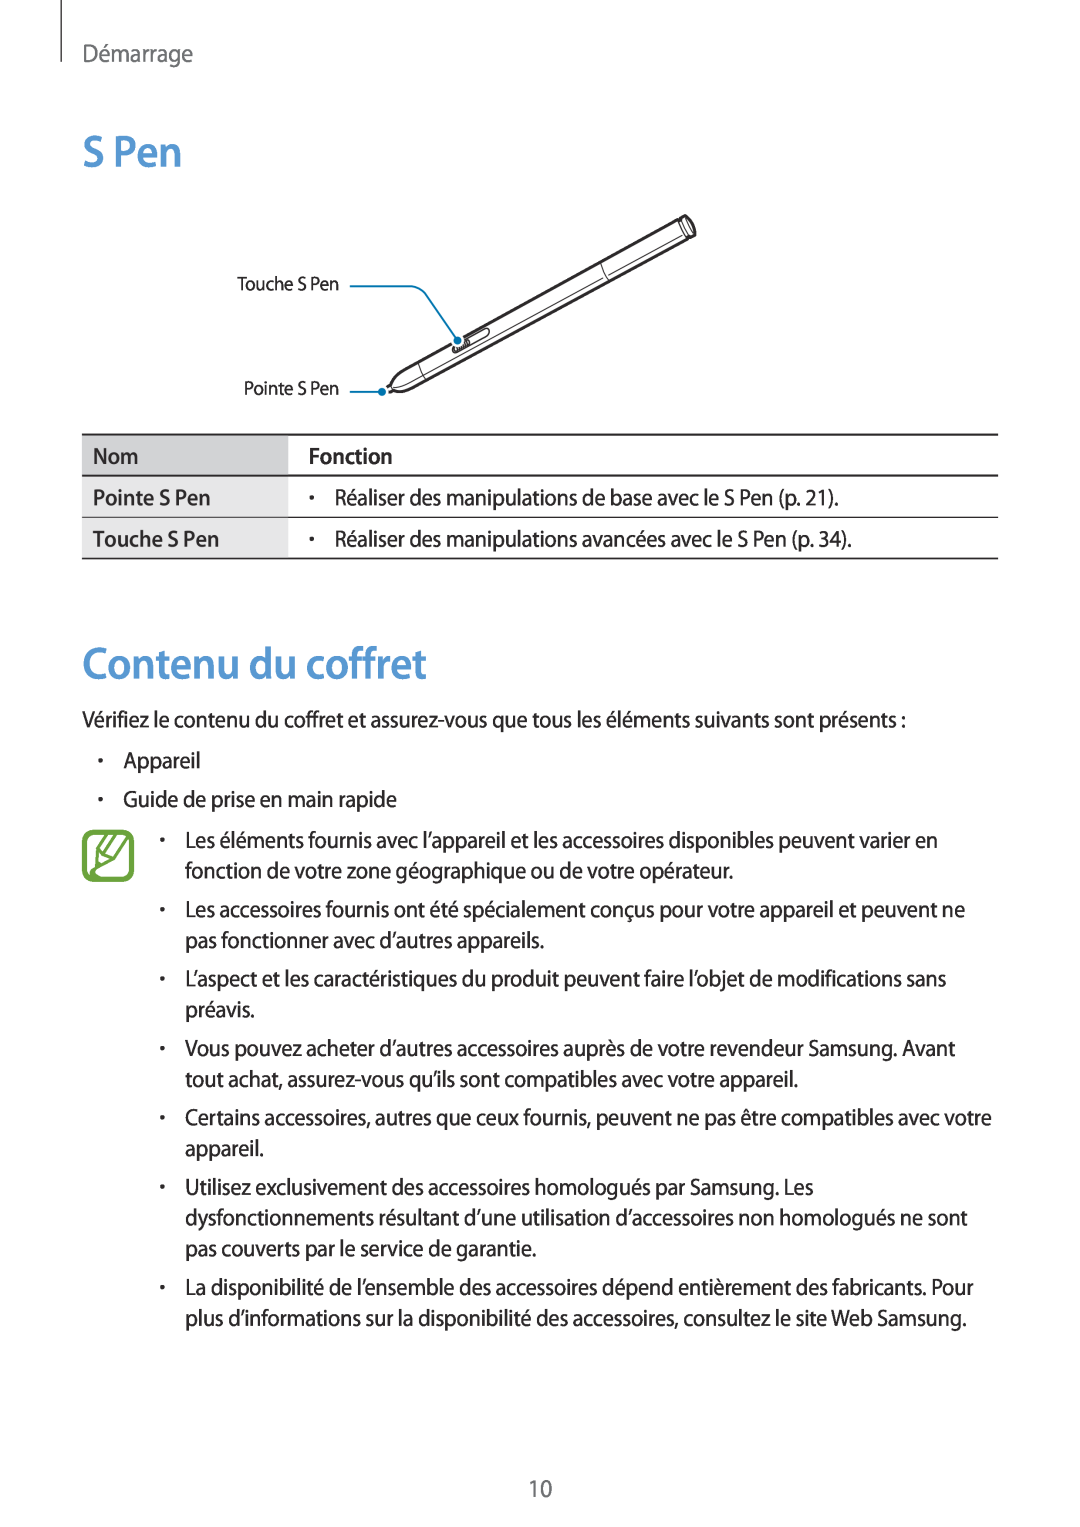 Samsung SM-P9050ZWAXEF Contenu du coffret, Pointe S Pen, Réaliser des manipulations de base avec le S Pen p, Démarrage 